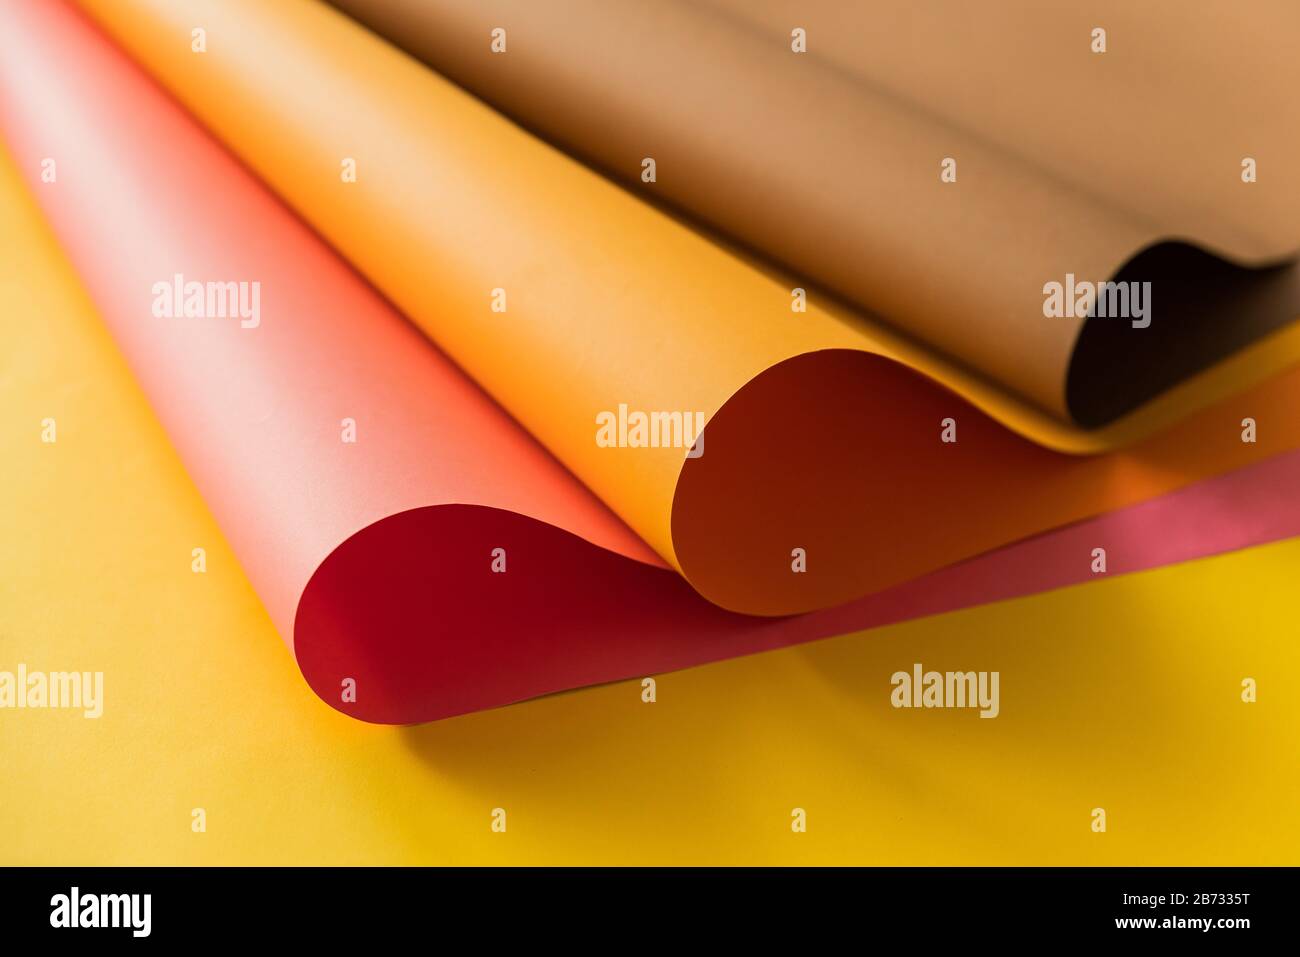 Rosafarbene und orangefarbene Papiere, die über gelbem Farbpapier zusammengerollt sind. Papiere für kreatives Handwerk und Design in der Schule. Stockfoto